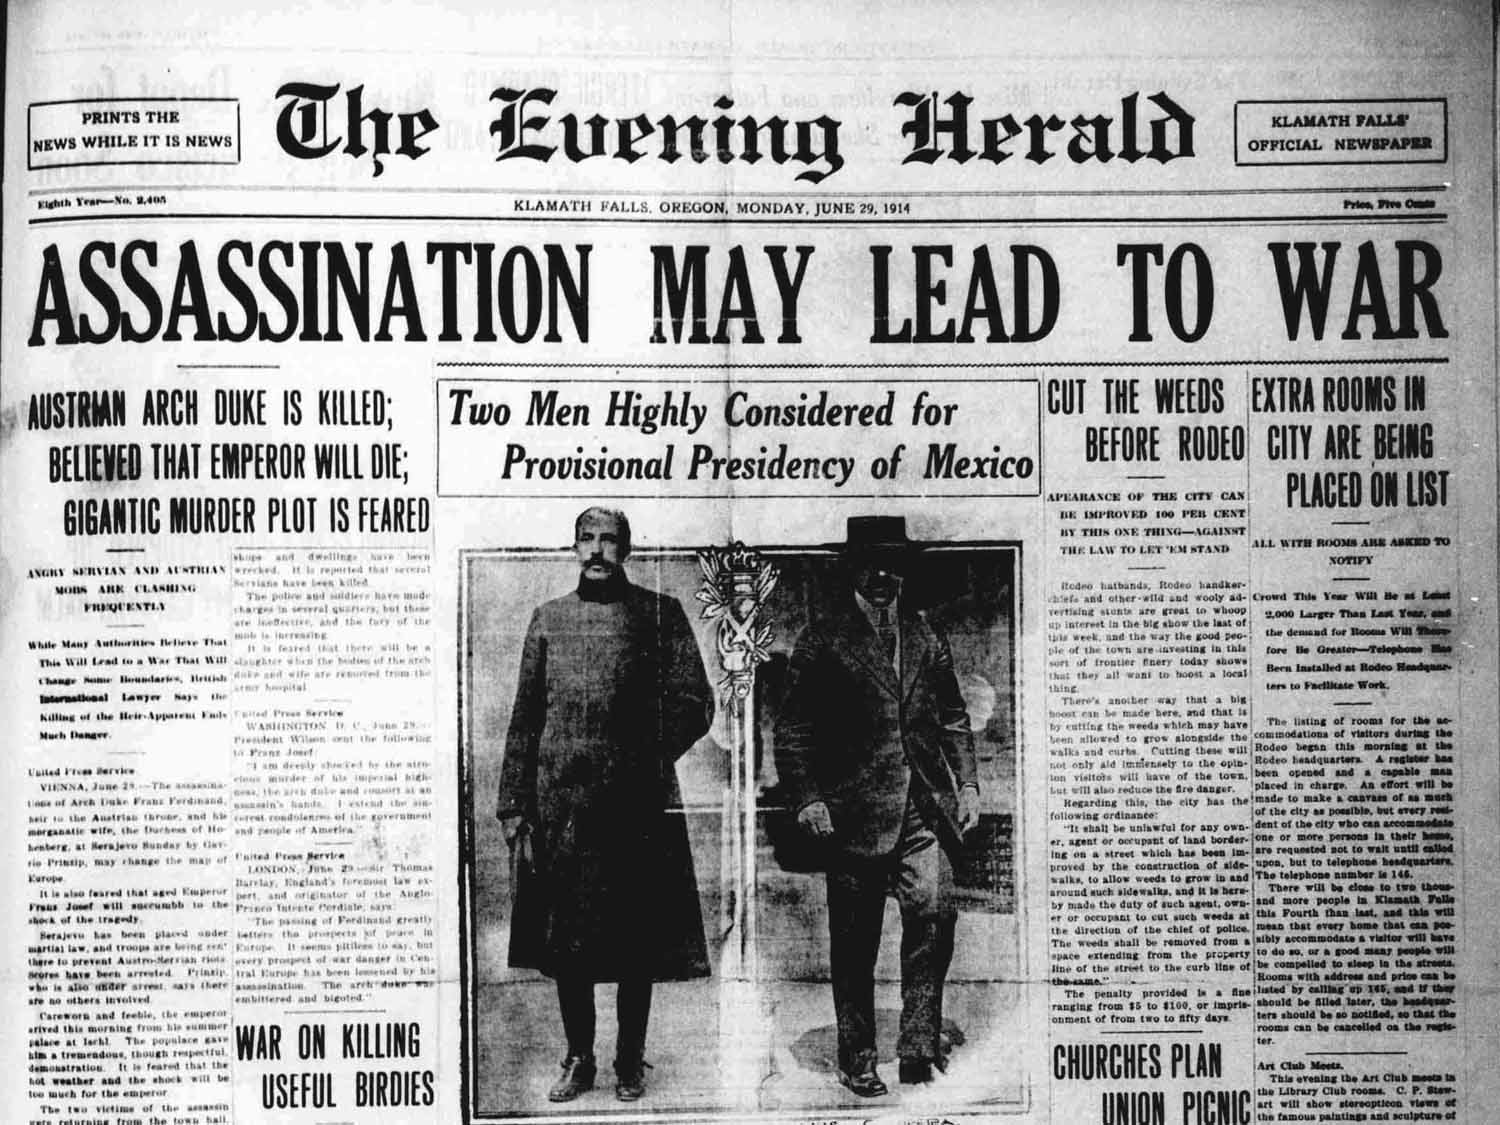 перша шпальта газети The Evening Herald, за 29 червня 1914р., регіональної газети в Америці, що видавалась з 1906 до 1942